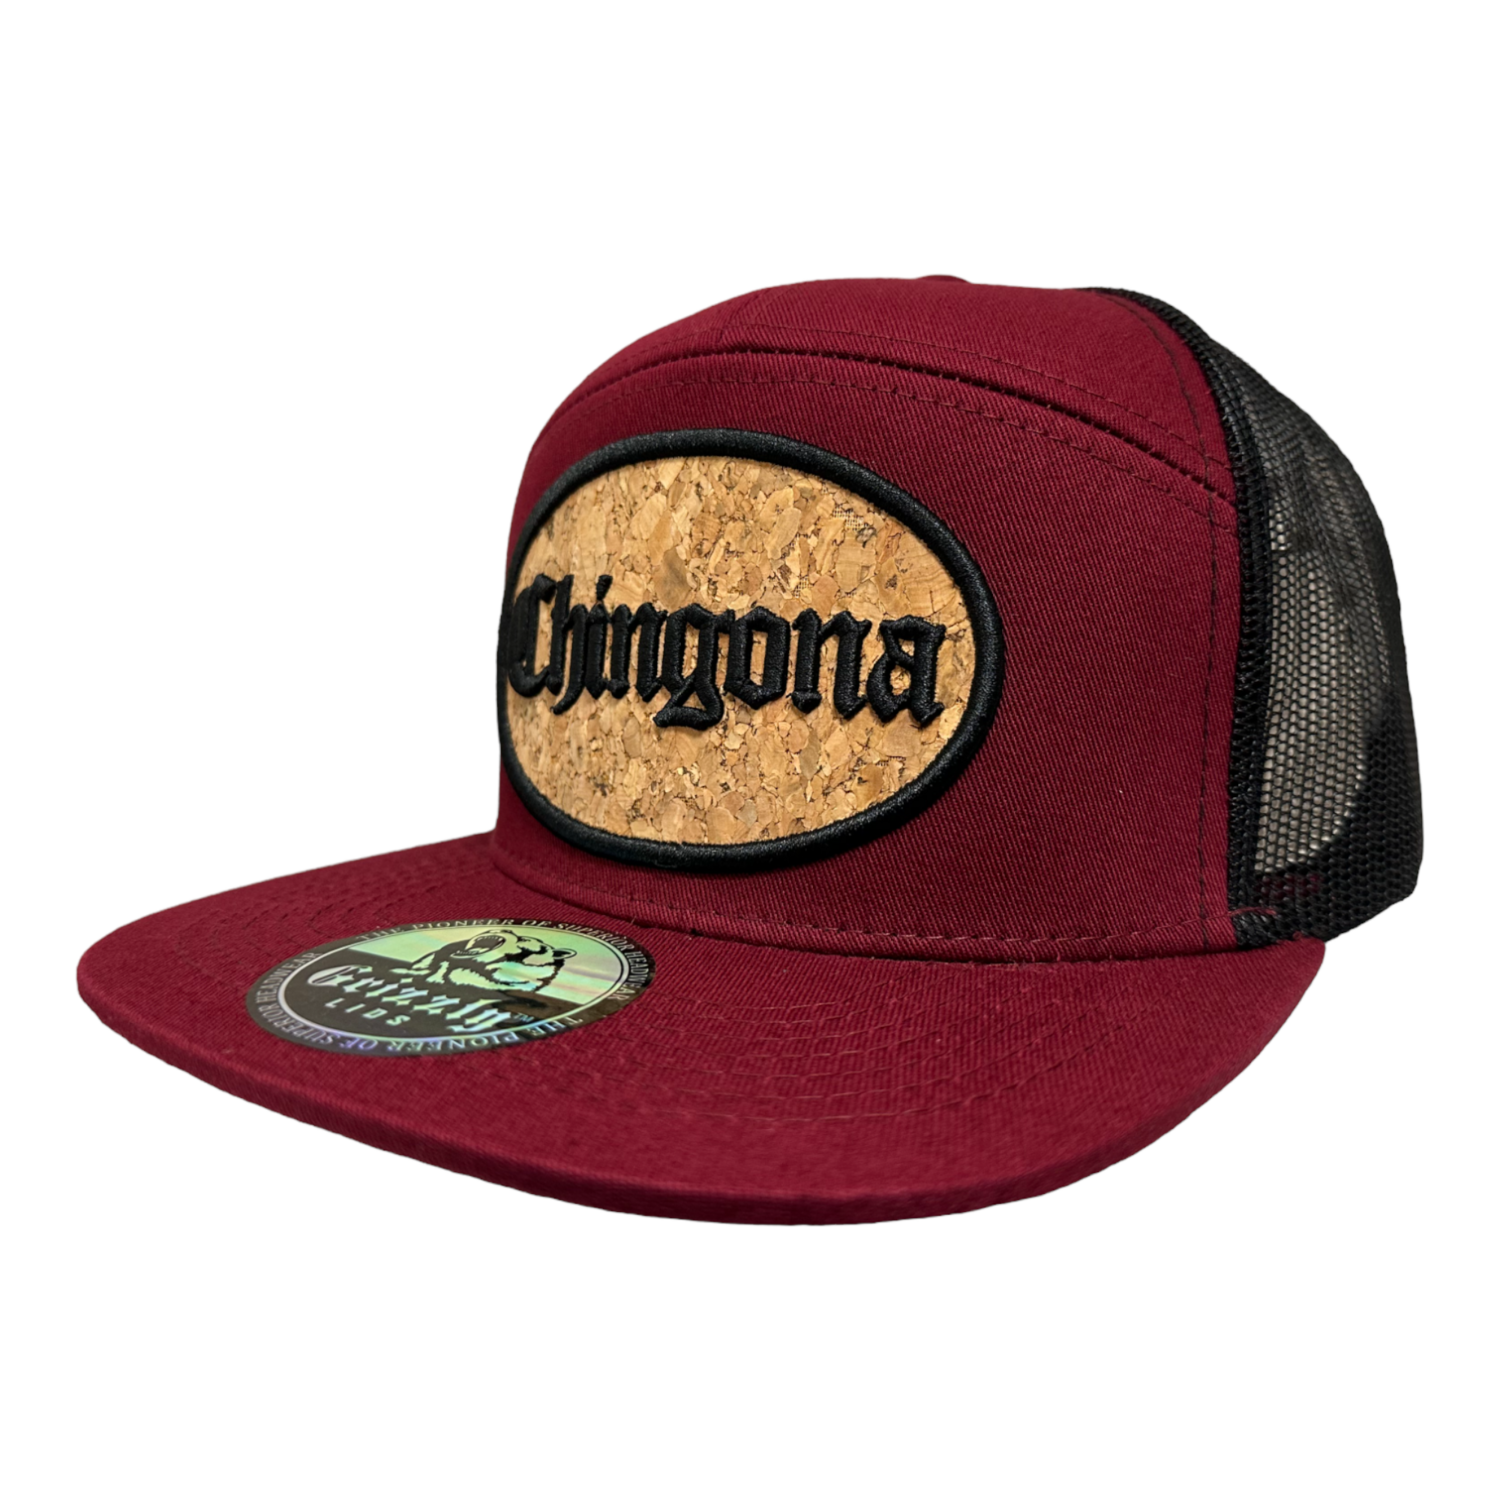 Chingona Oval Cork Patch Trucker Hat